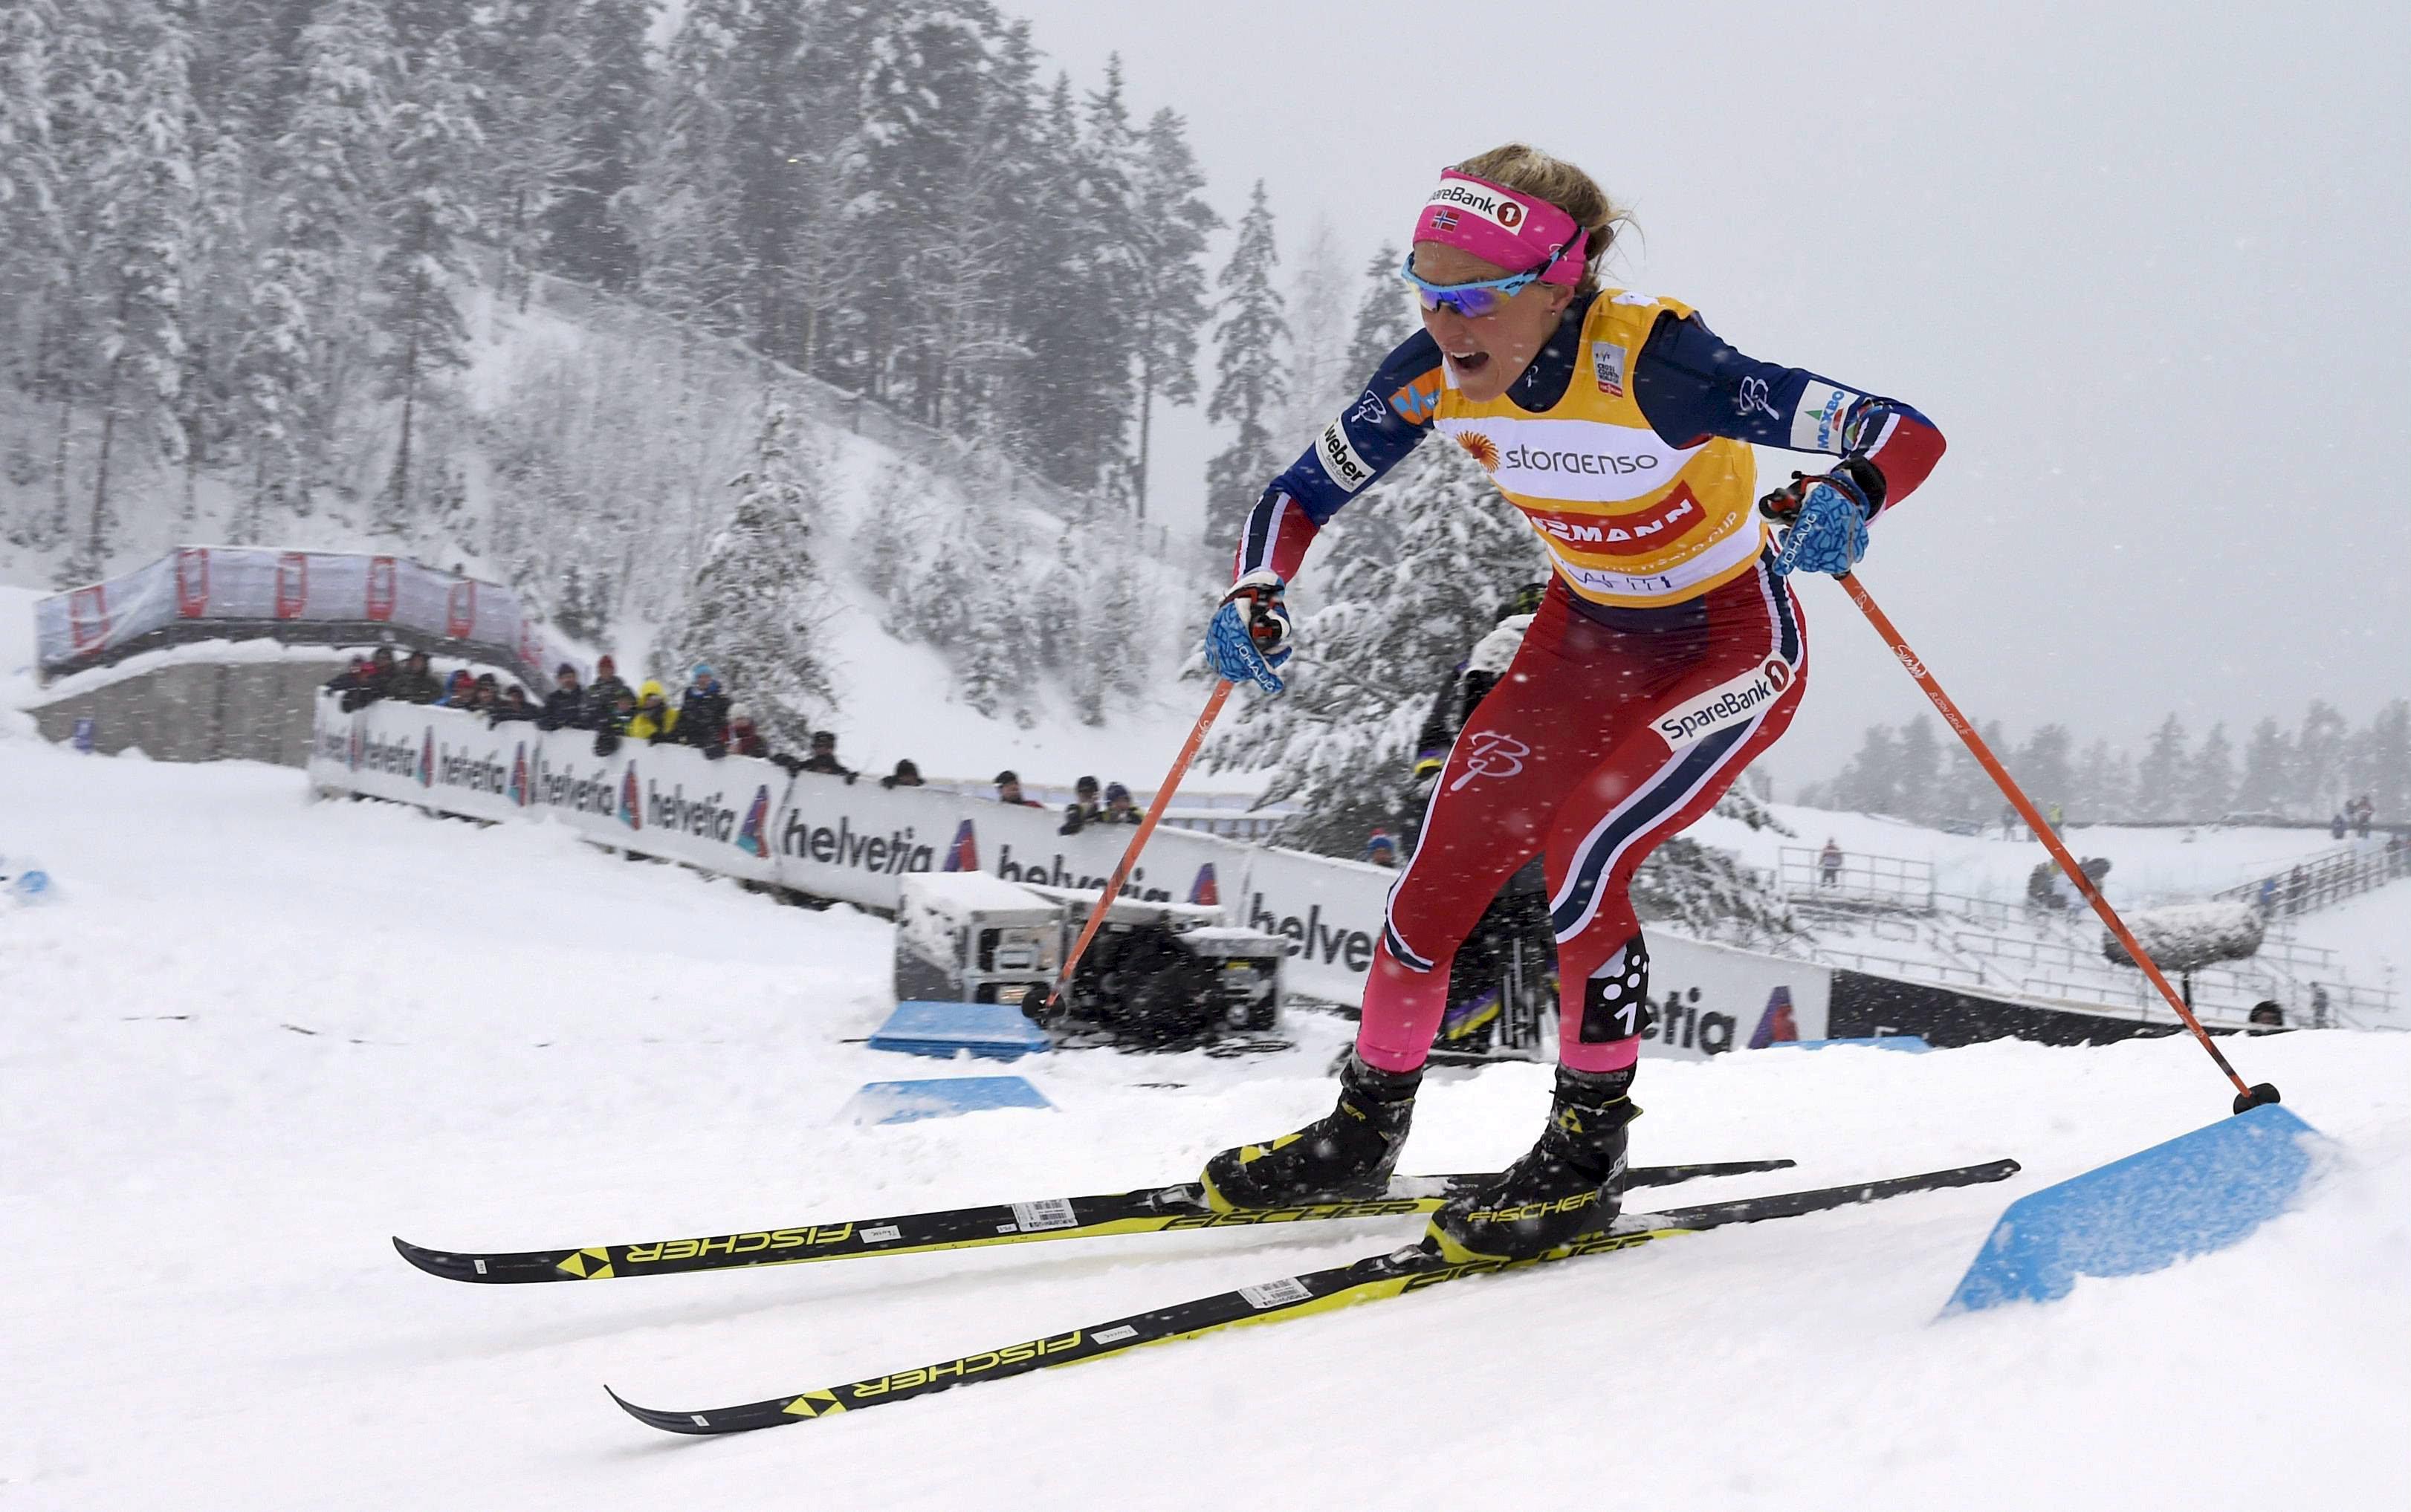 Skilanglauf: Johaug kehrte nach Dopingsperre mit Sieg zurück